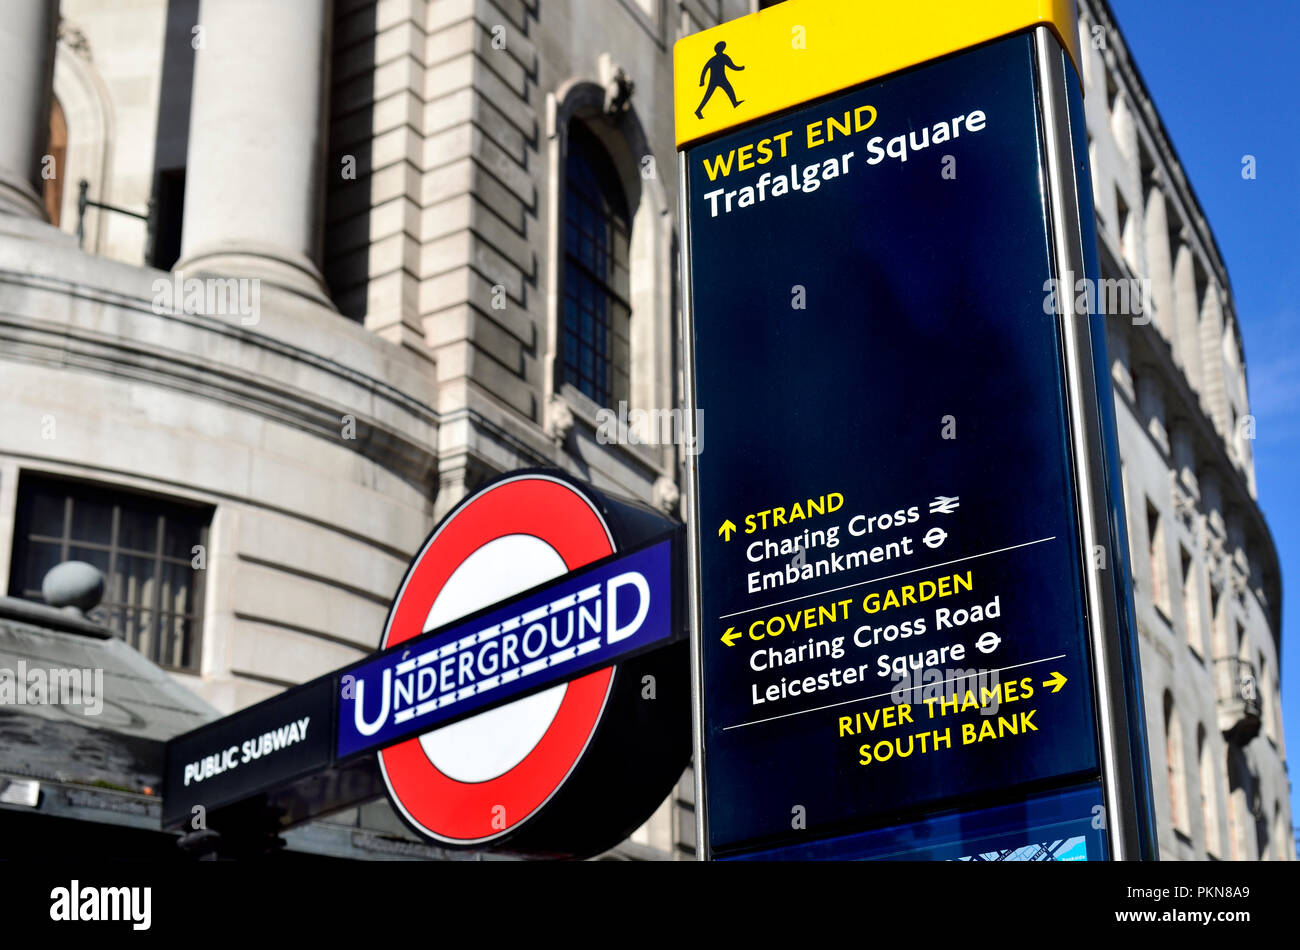 Informations touristiques sur Signer et de la station de métro (Charing Cross) à Trafalgar Square, Londres, Angleterre, Royaume-Uni. Banque D'Images